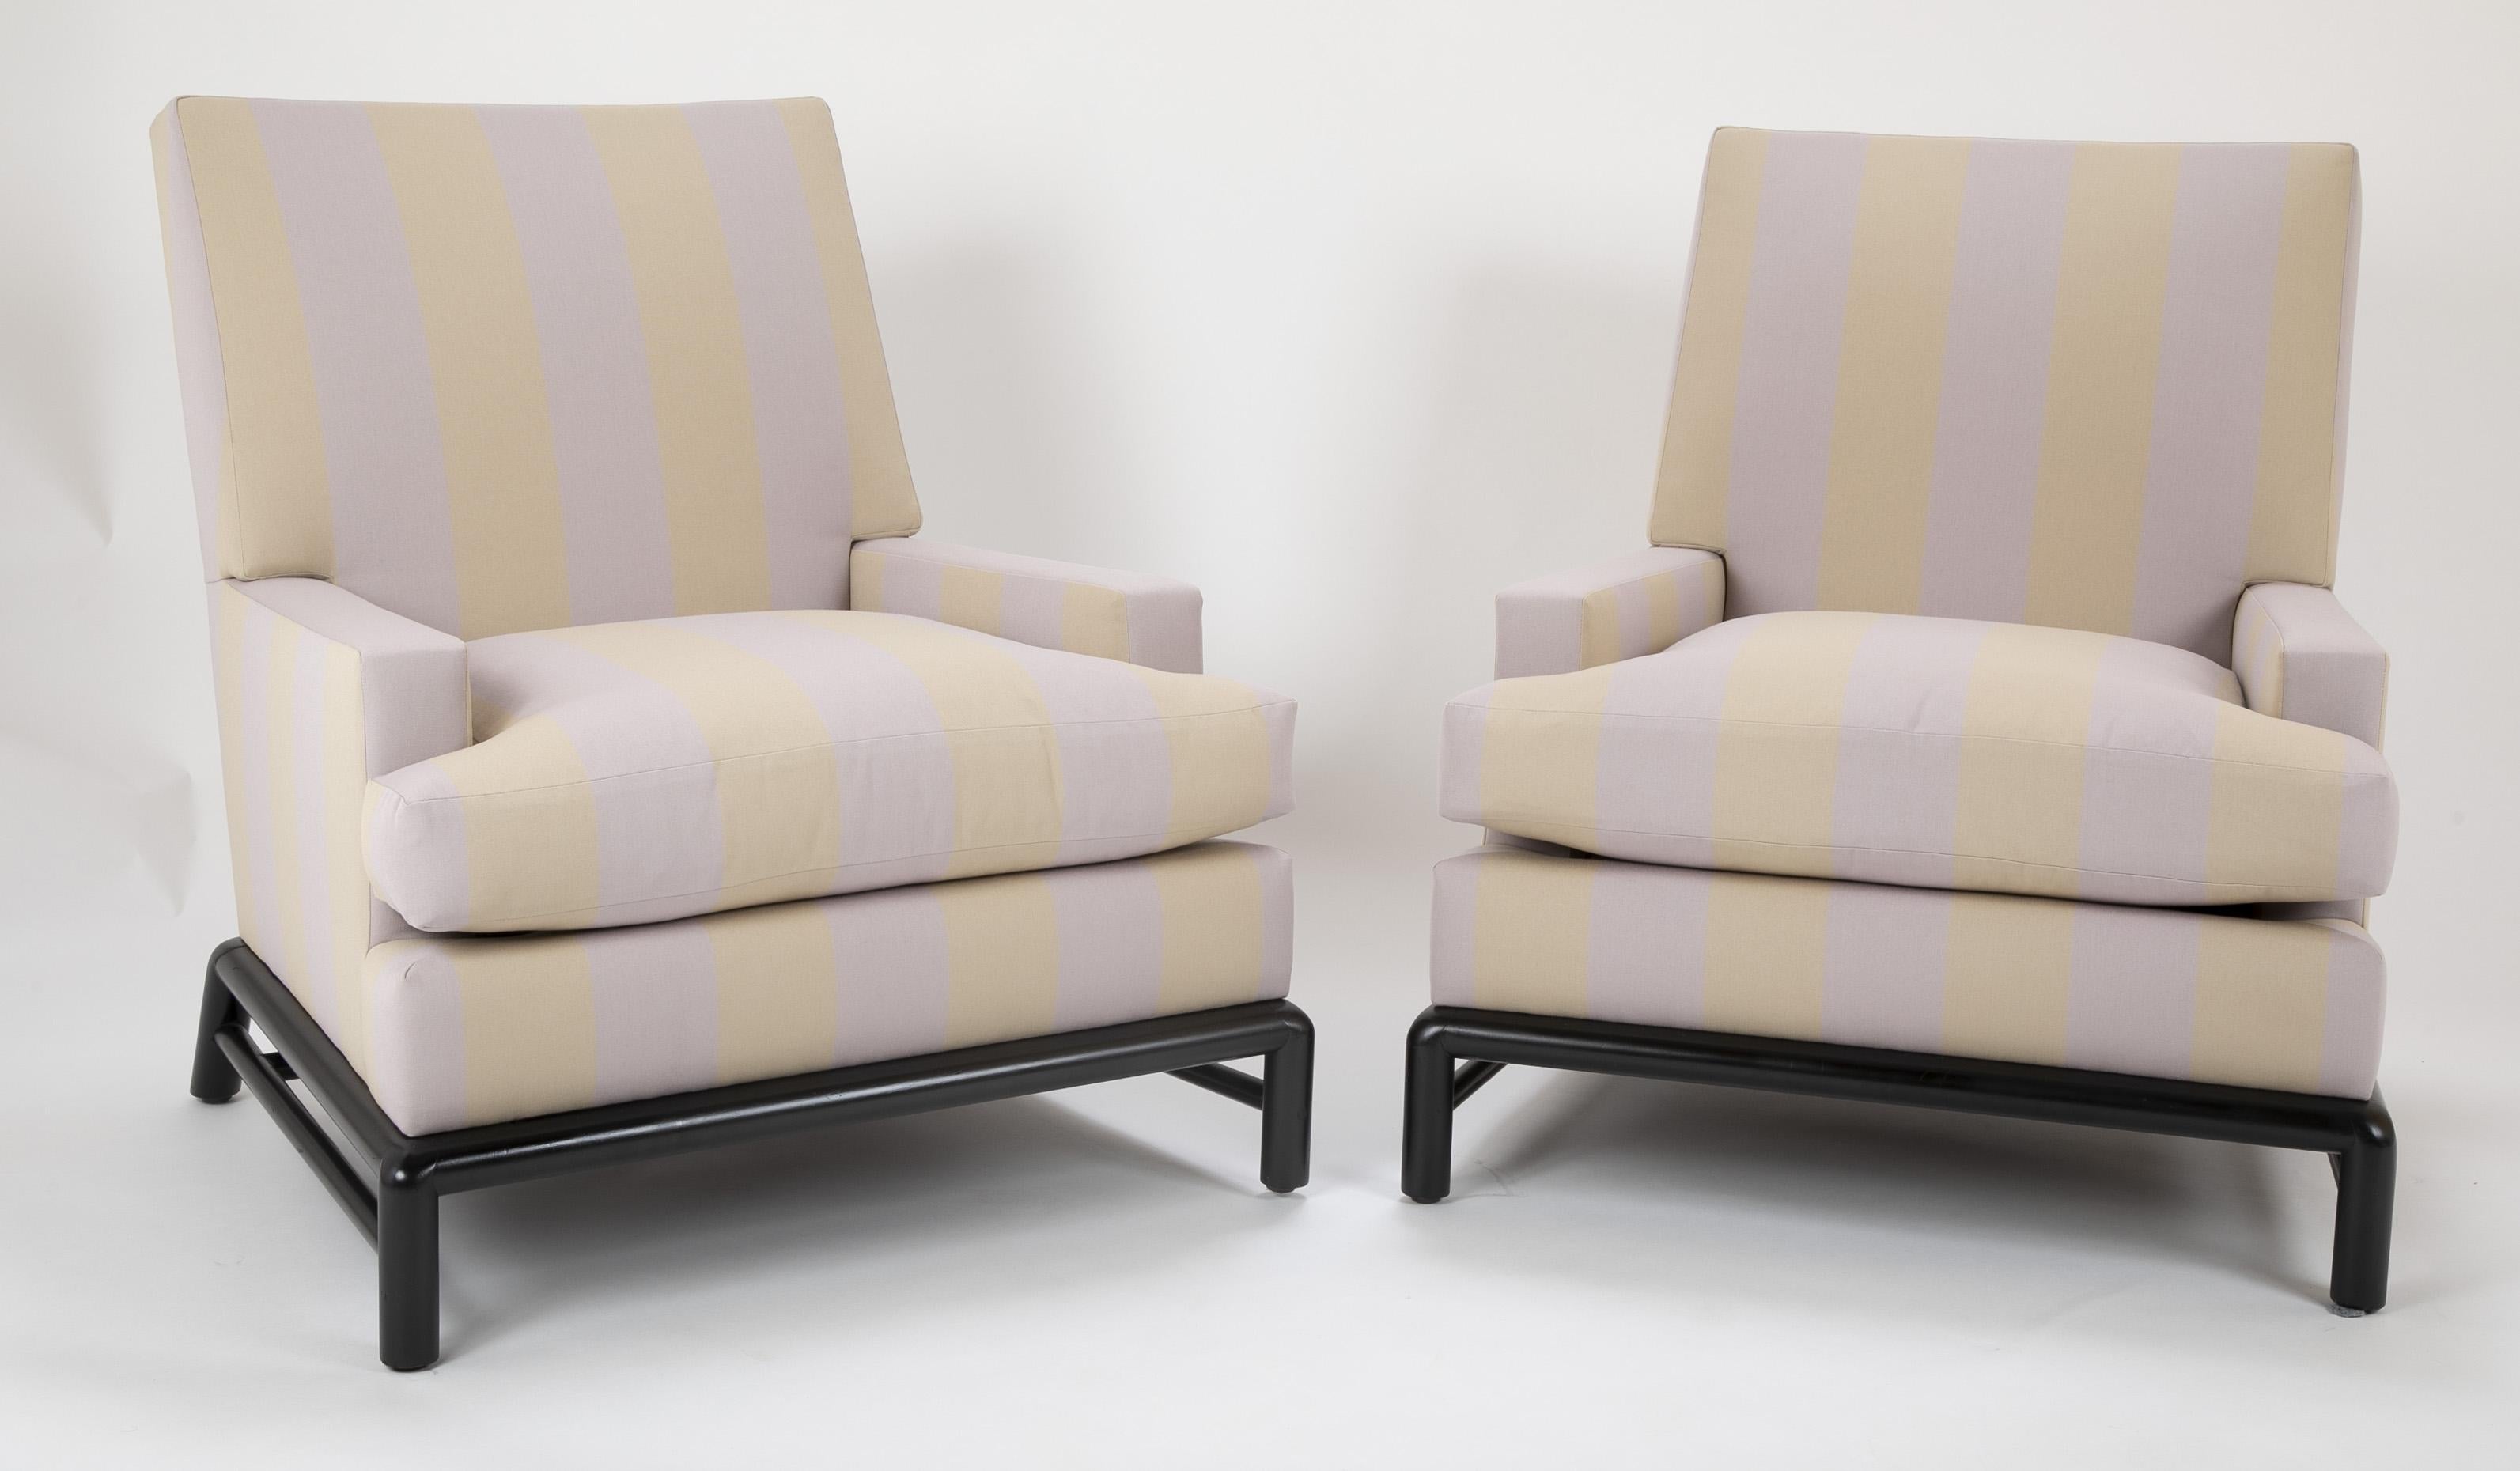 Une paire de chaises conçues par T.H. Robsjohn Gibbings, tapissé de tissu Rogers & Goffigon. Nouvellement rembourré avec un coussin en duvet.